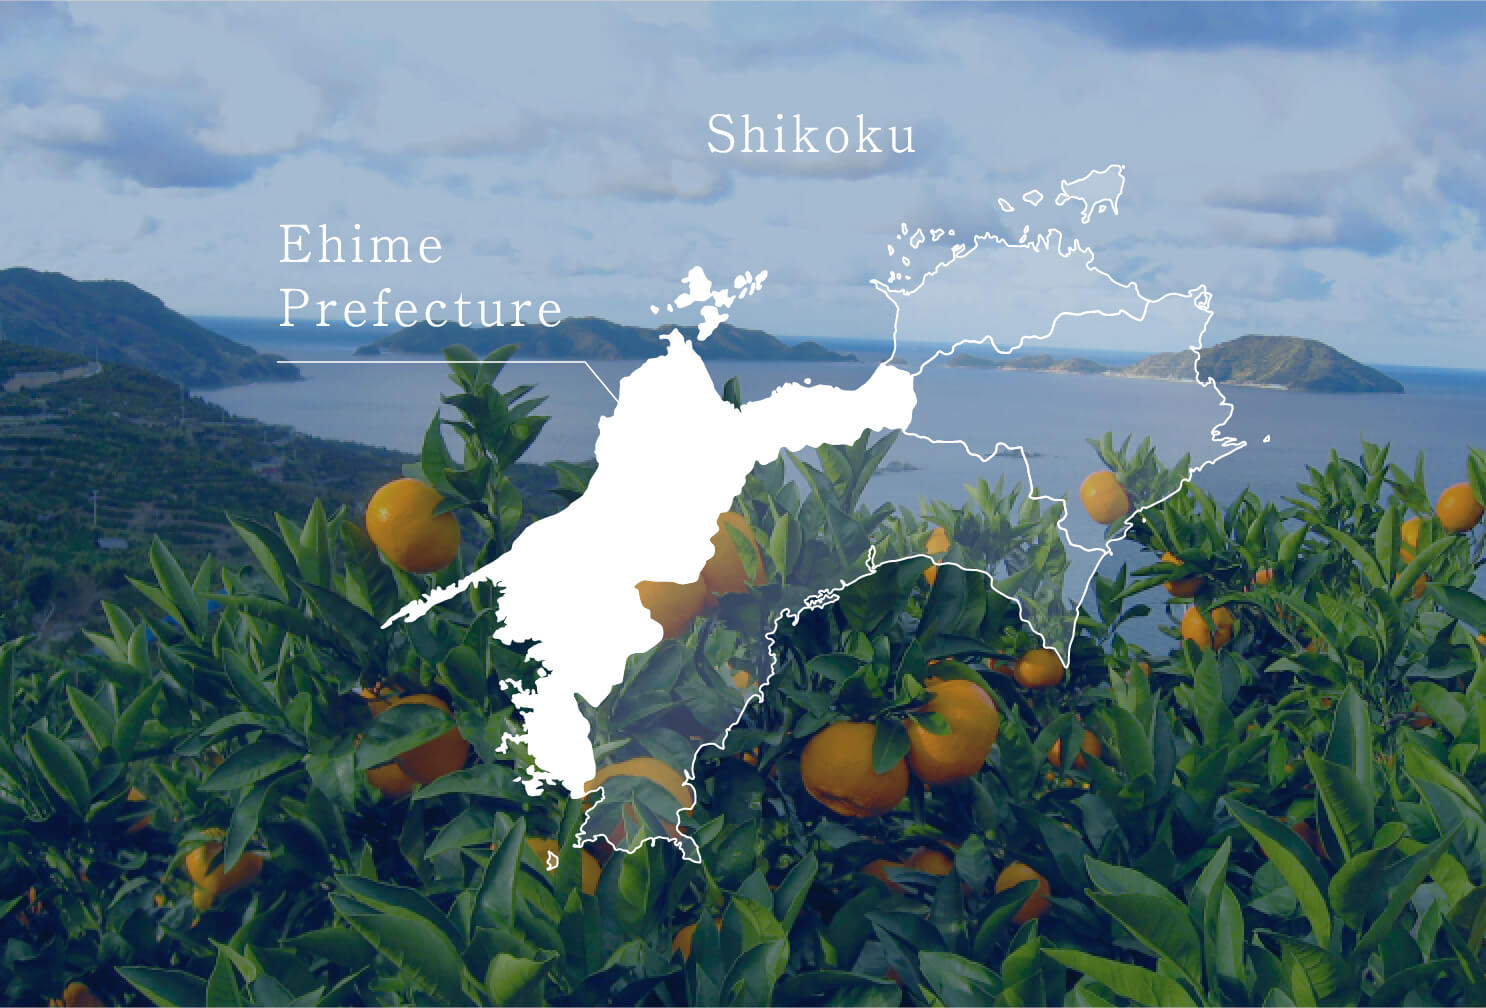 愛媛県の観光について